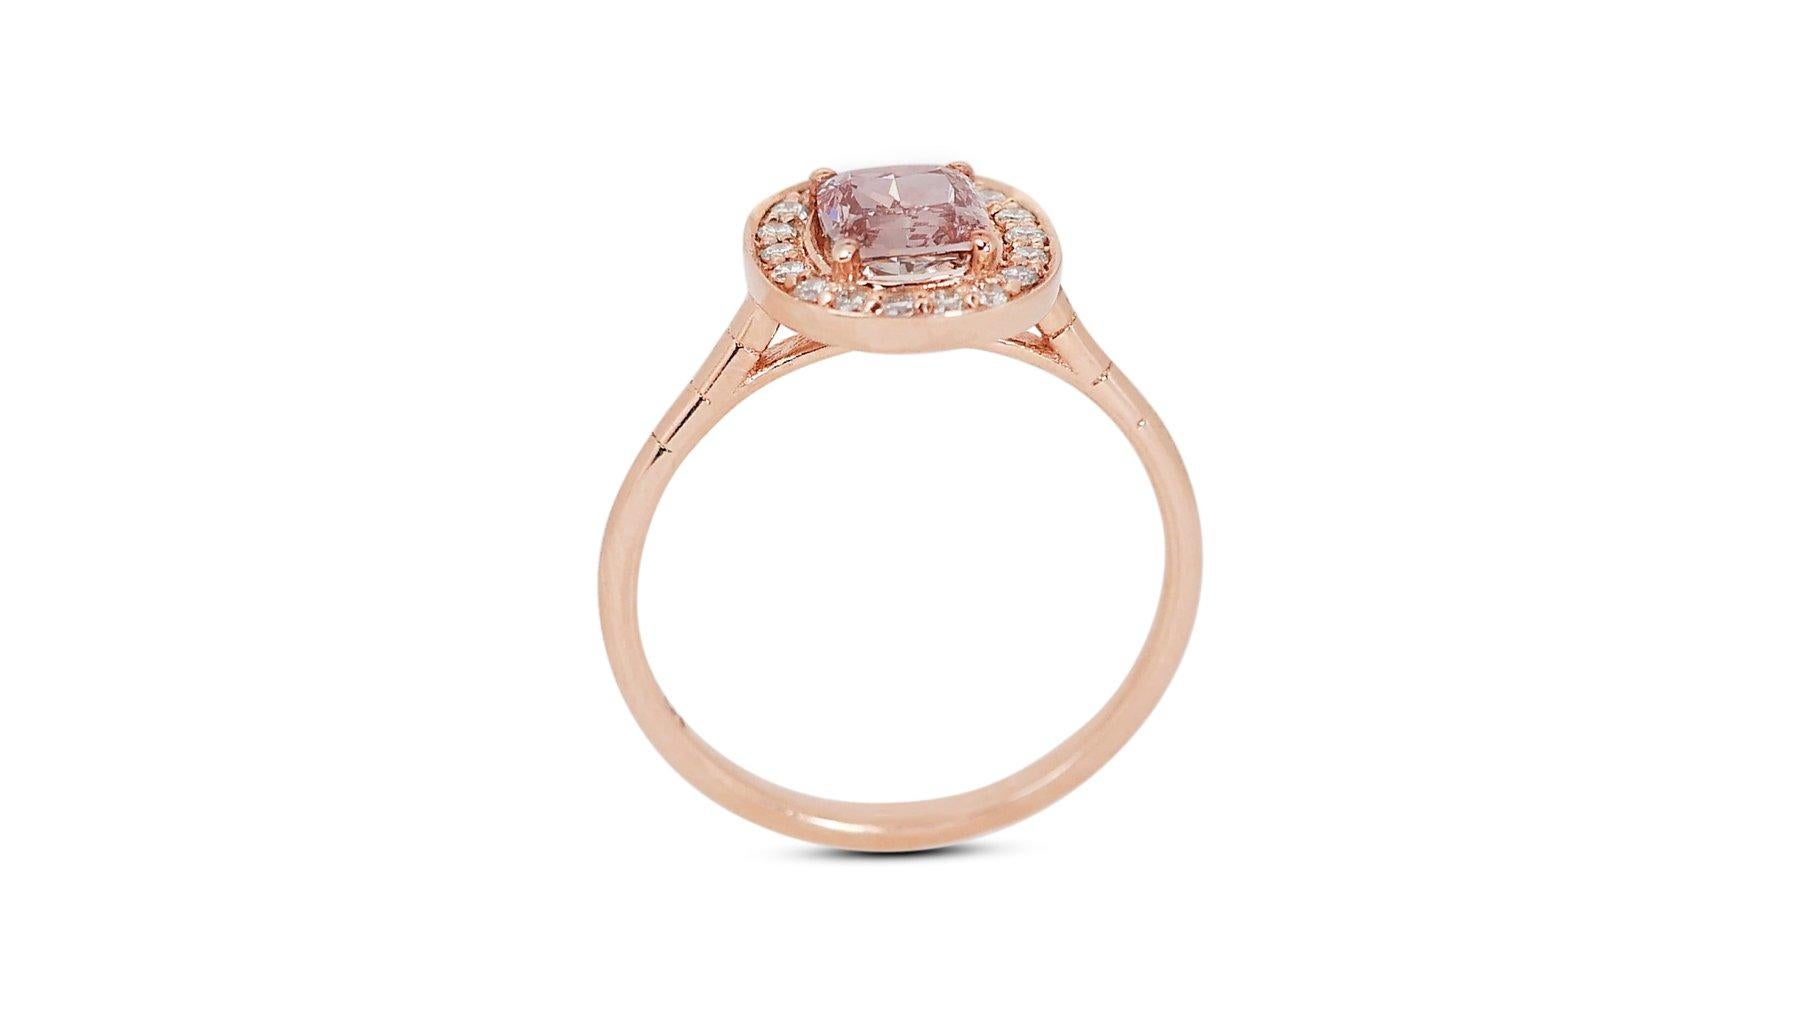 Elegant 18 kt. Pink Gold Ring with 1.25 ct Total Natural Diamonds - IGI Cert 2